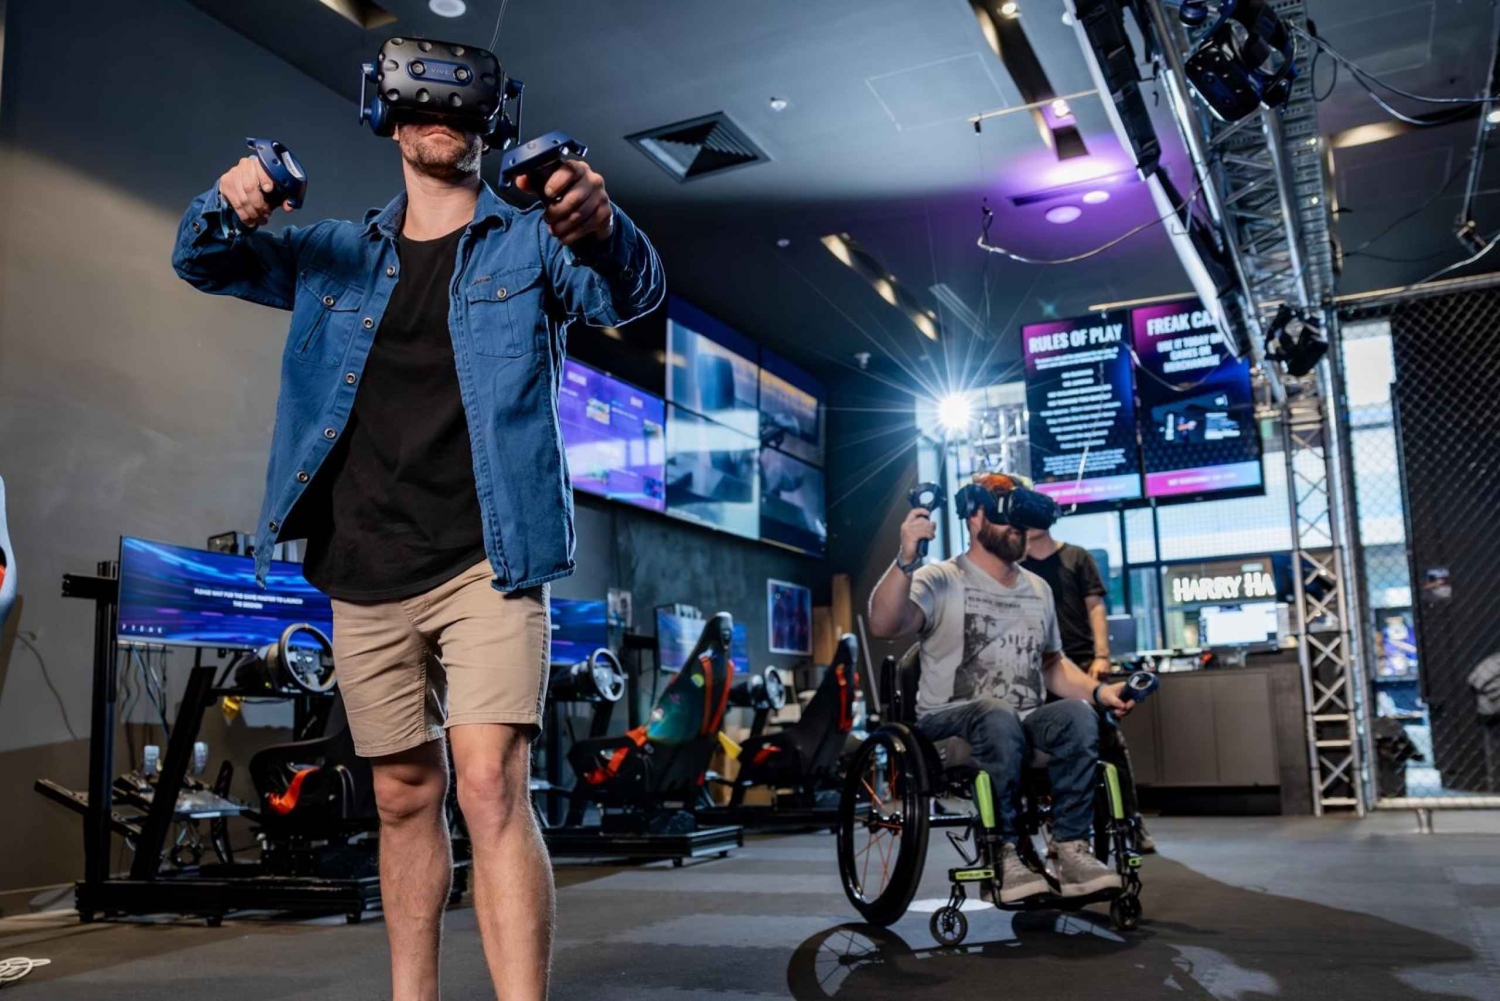 Macquarie Centre: Esperienza VR Escape Room per 2 persone